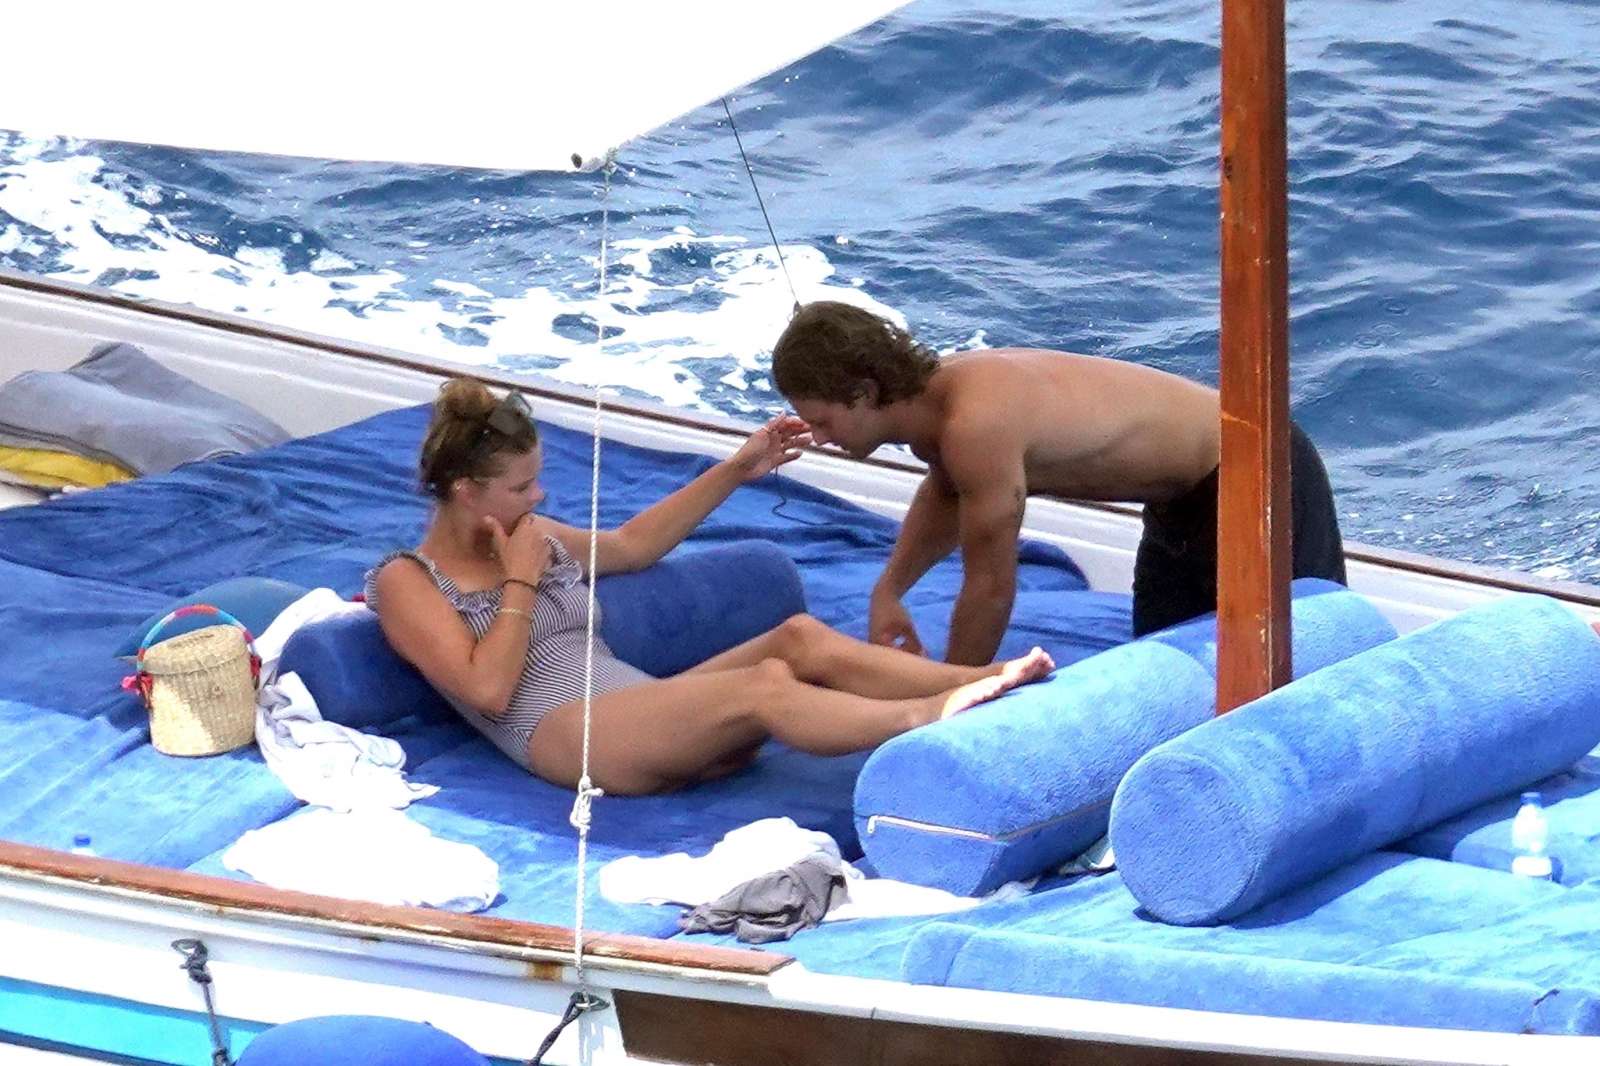 Nina Agdal in Swimsuit on a boat in Capri